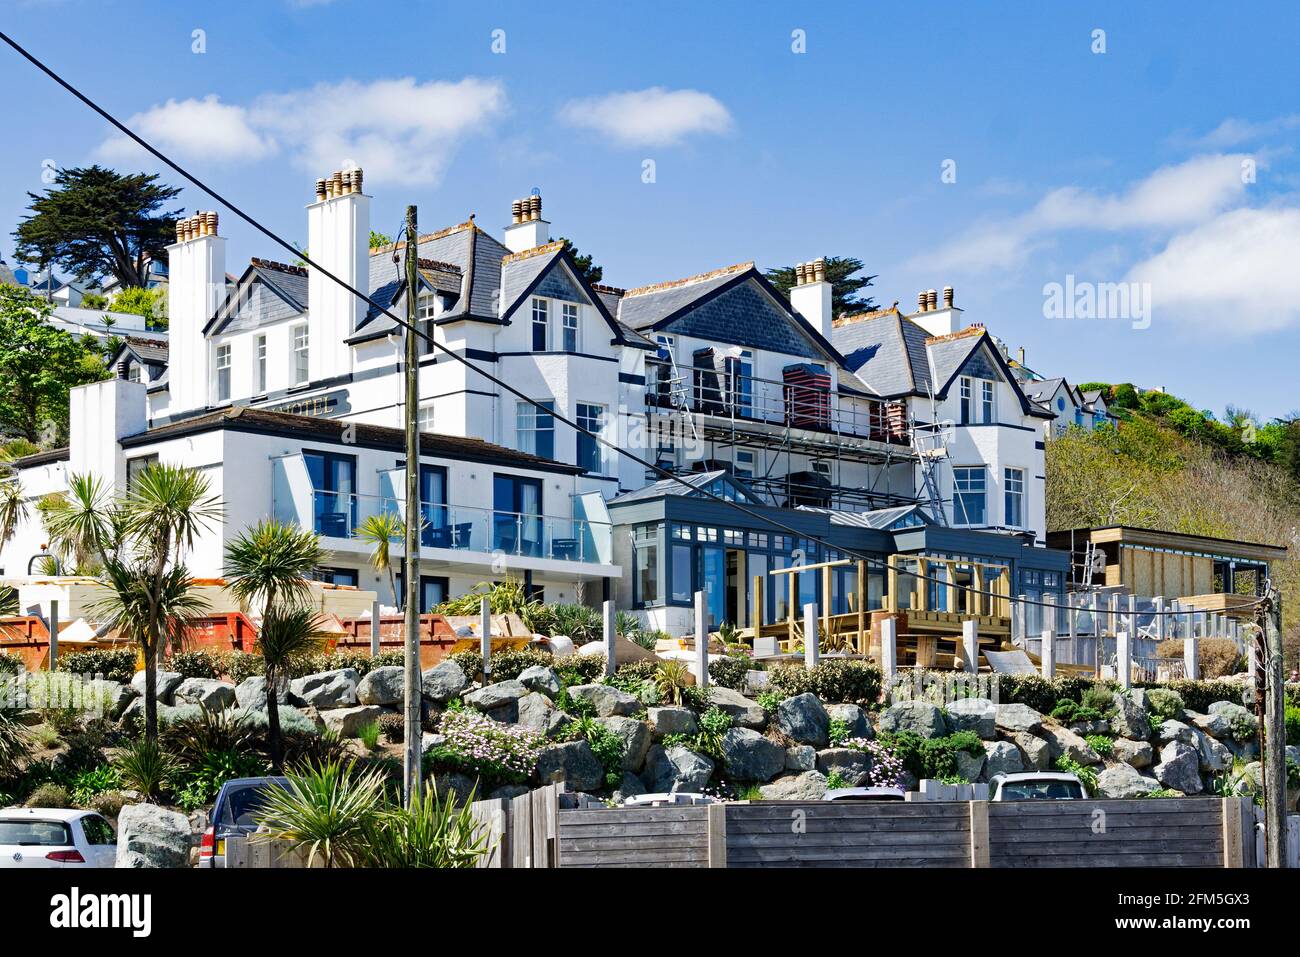 El hotel Carbis Bay tiene vistas a la playa de la bahía carbis cerca de St ives en Cornwall, Inglaterra, Reino Unido. El hotel es el lugar de celebración de la cumbre de G7 en junio de 2021 Foto de stock